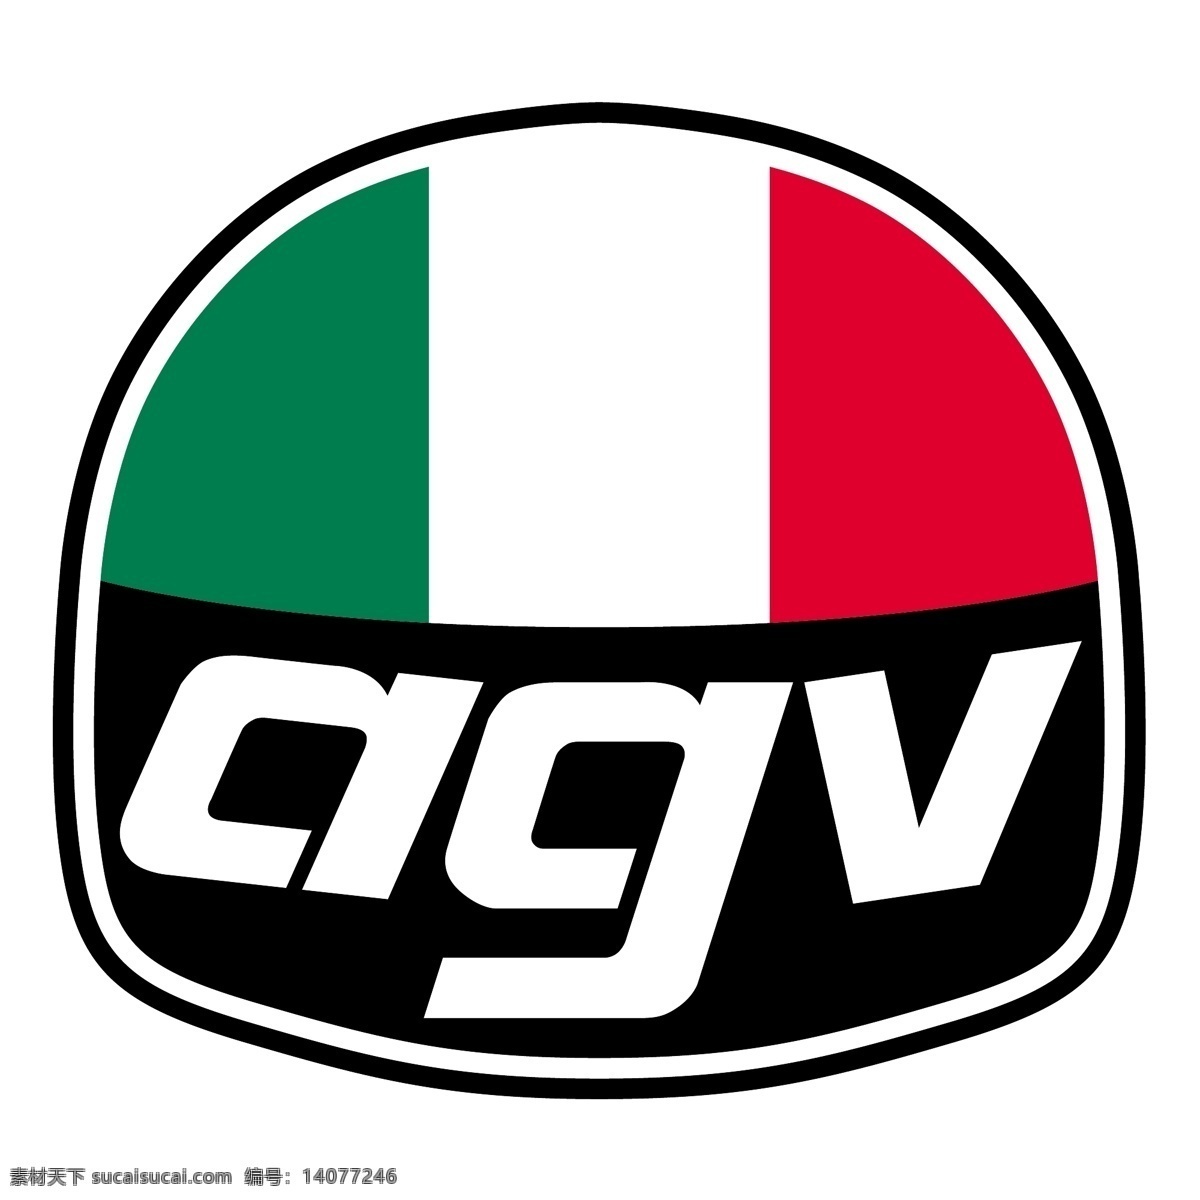 agv 赛车 免费赛车标识 标识 psd源文件 logo设计